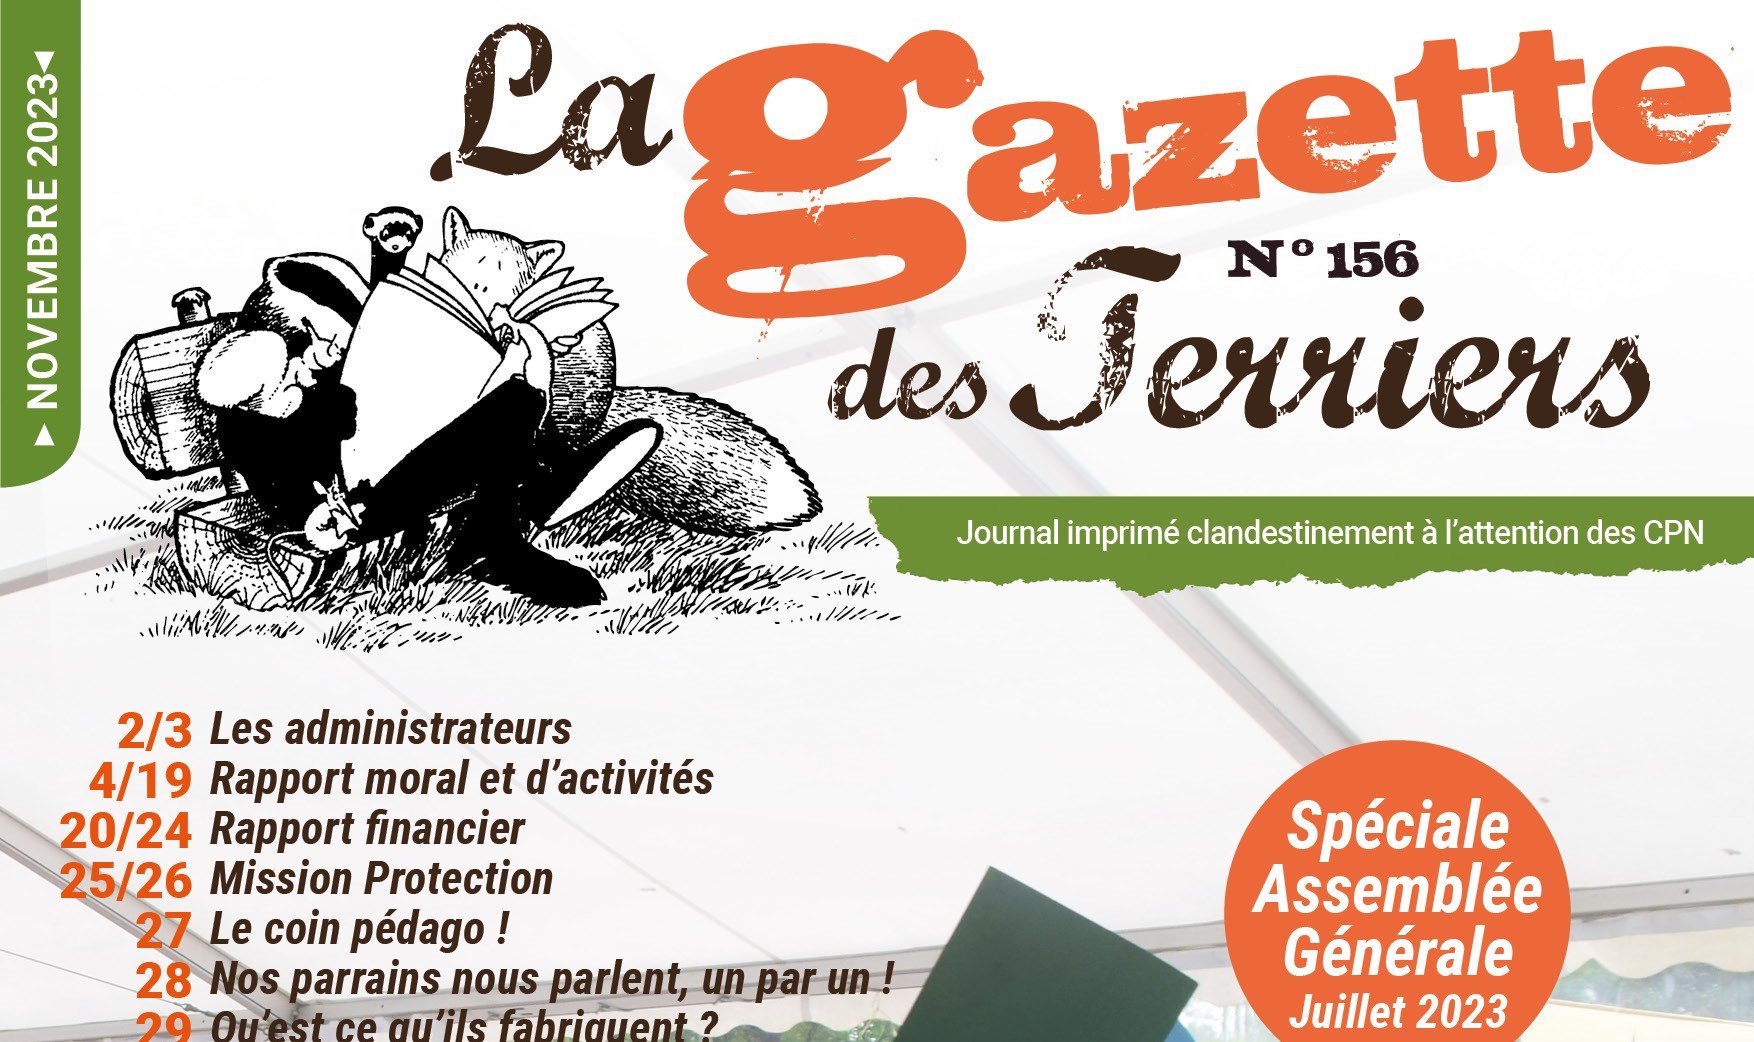 Gazette156-AG-couv - Copie